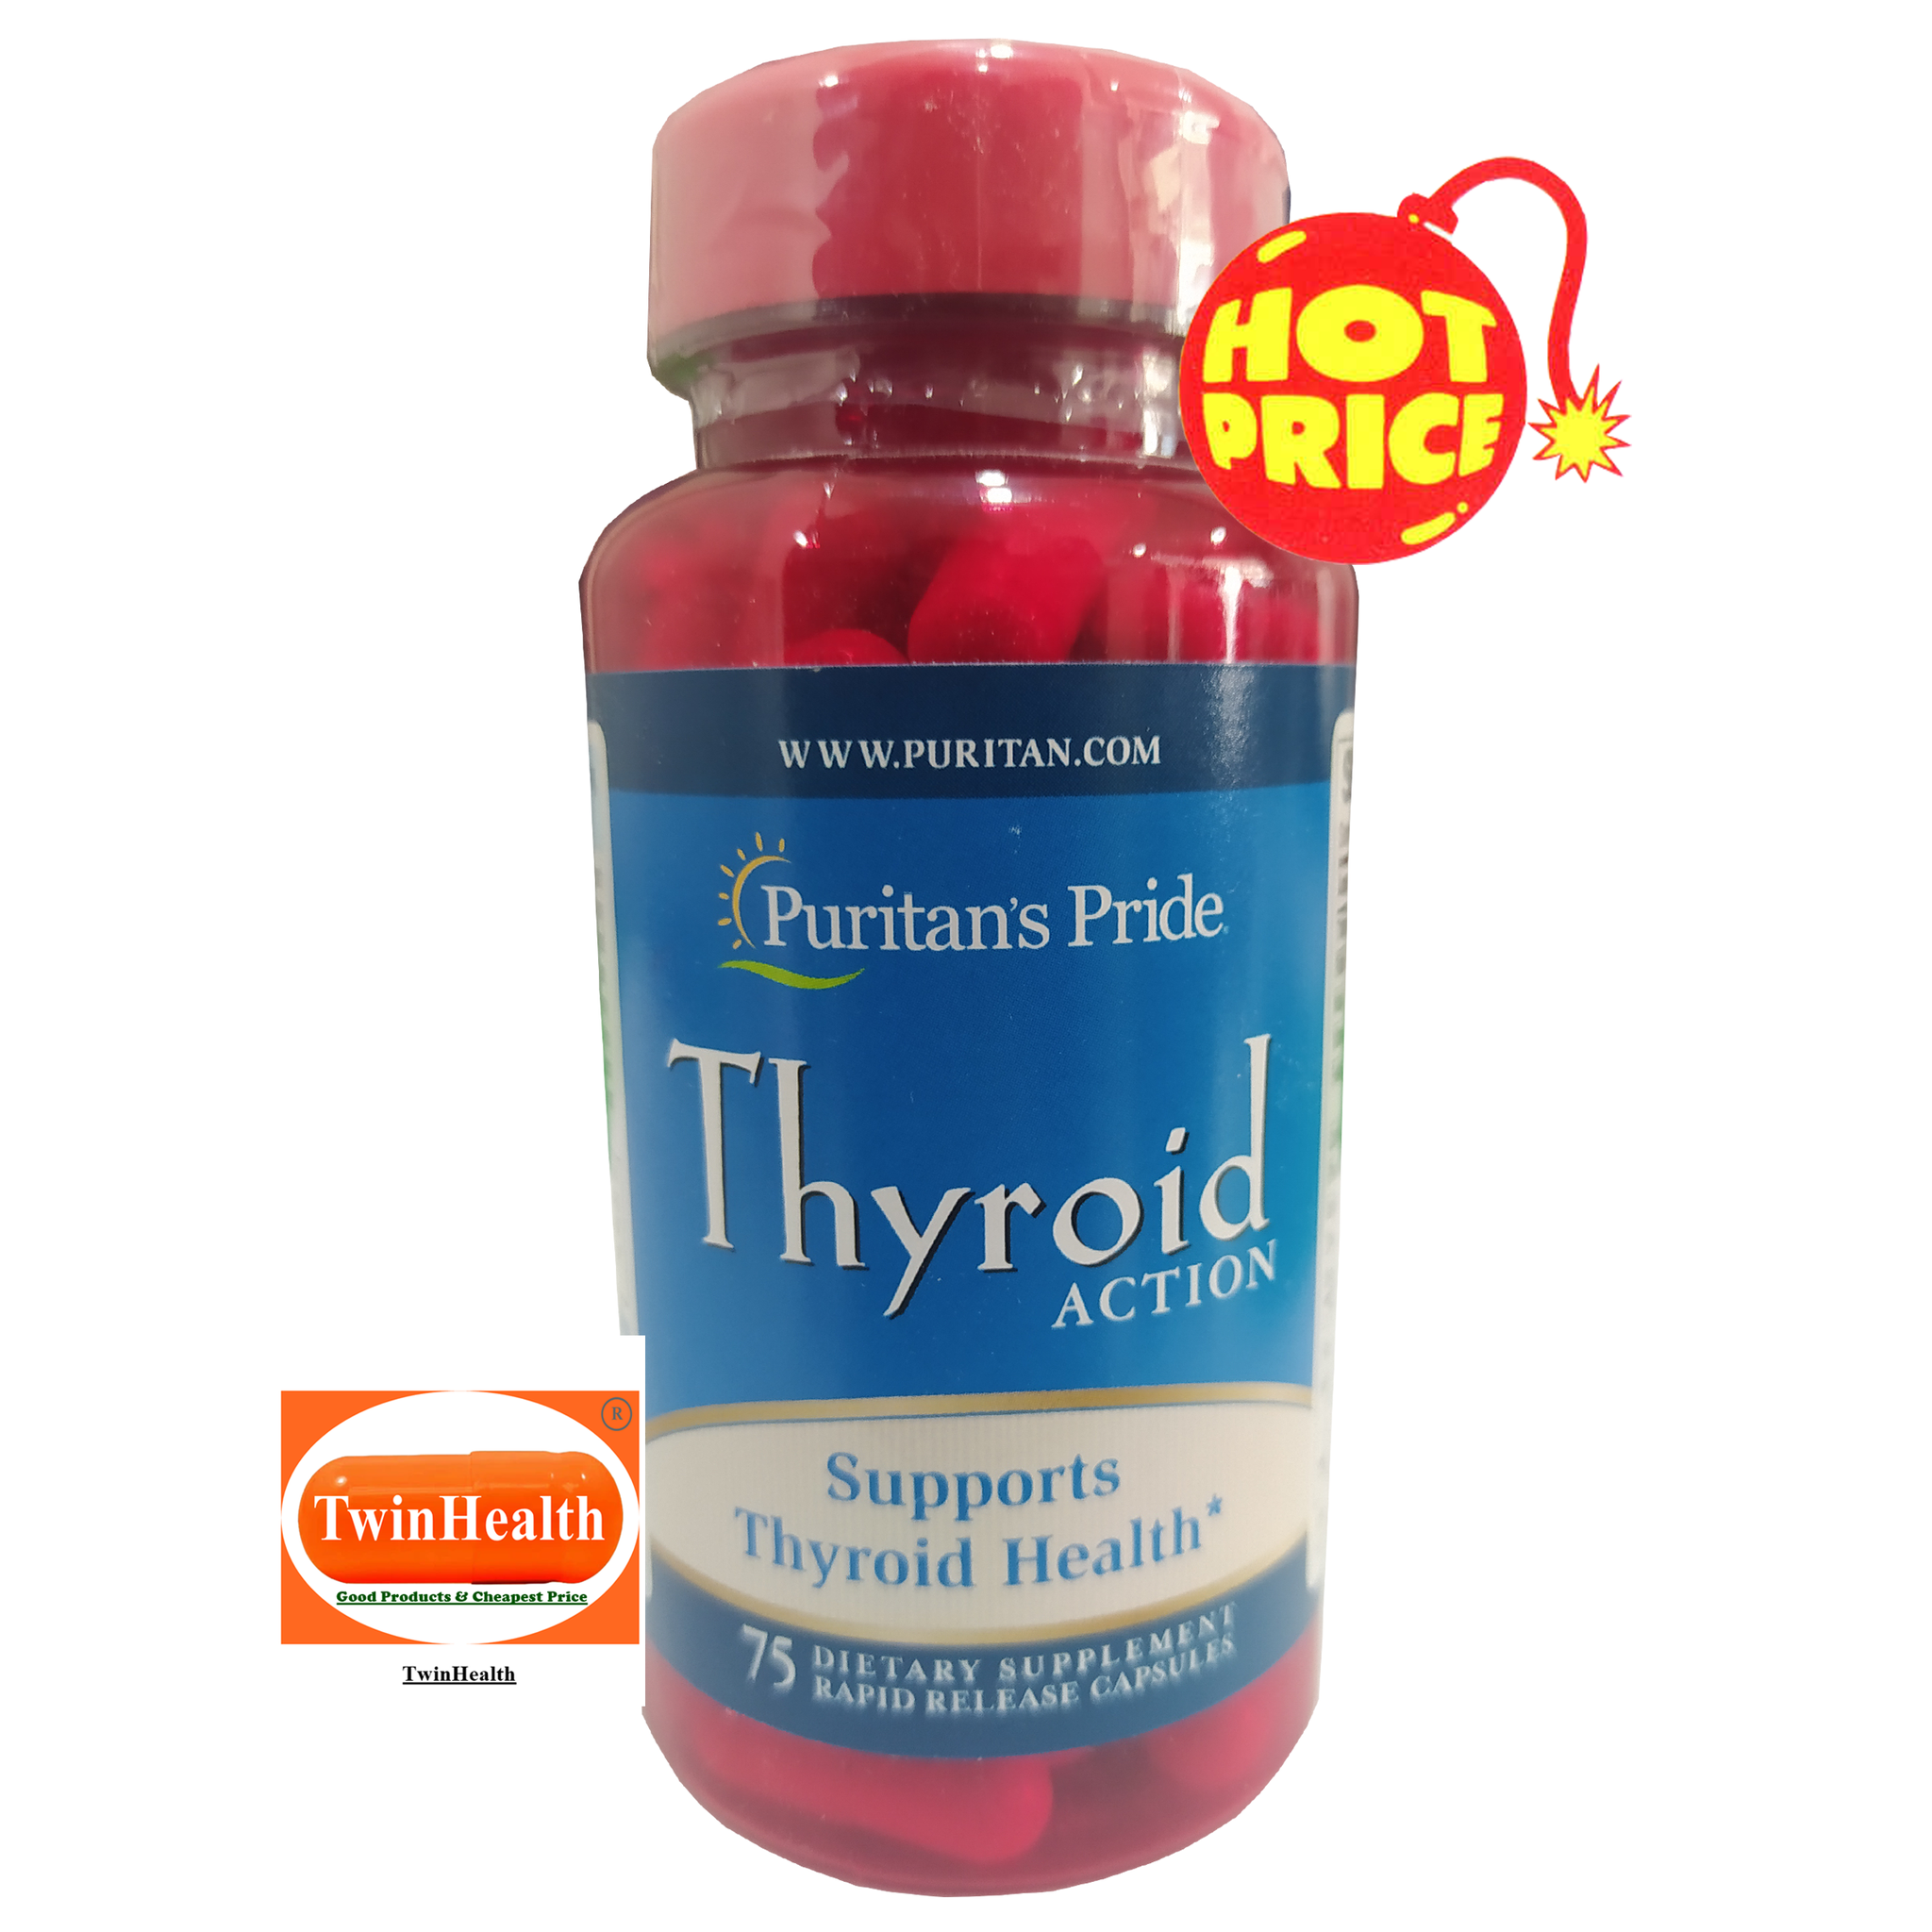 Puritan's Pride Thyroid Action / 75 Rapid Release Capsules